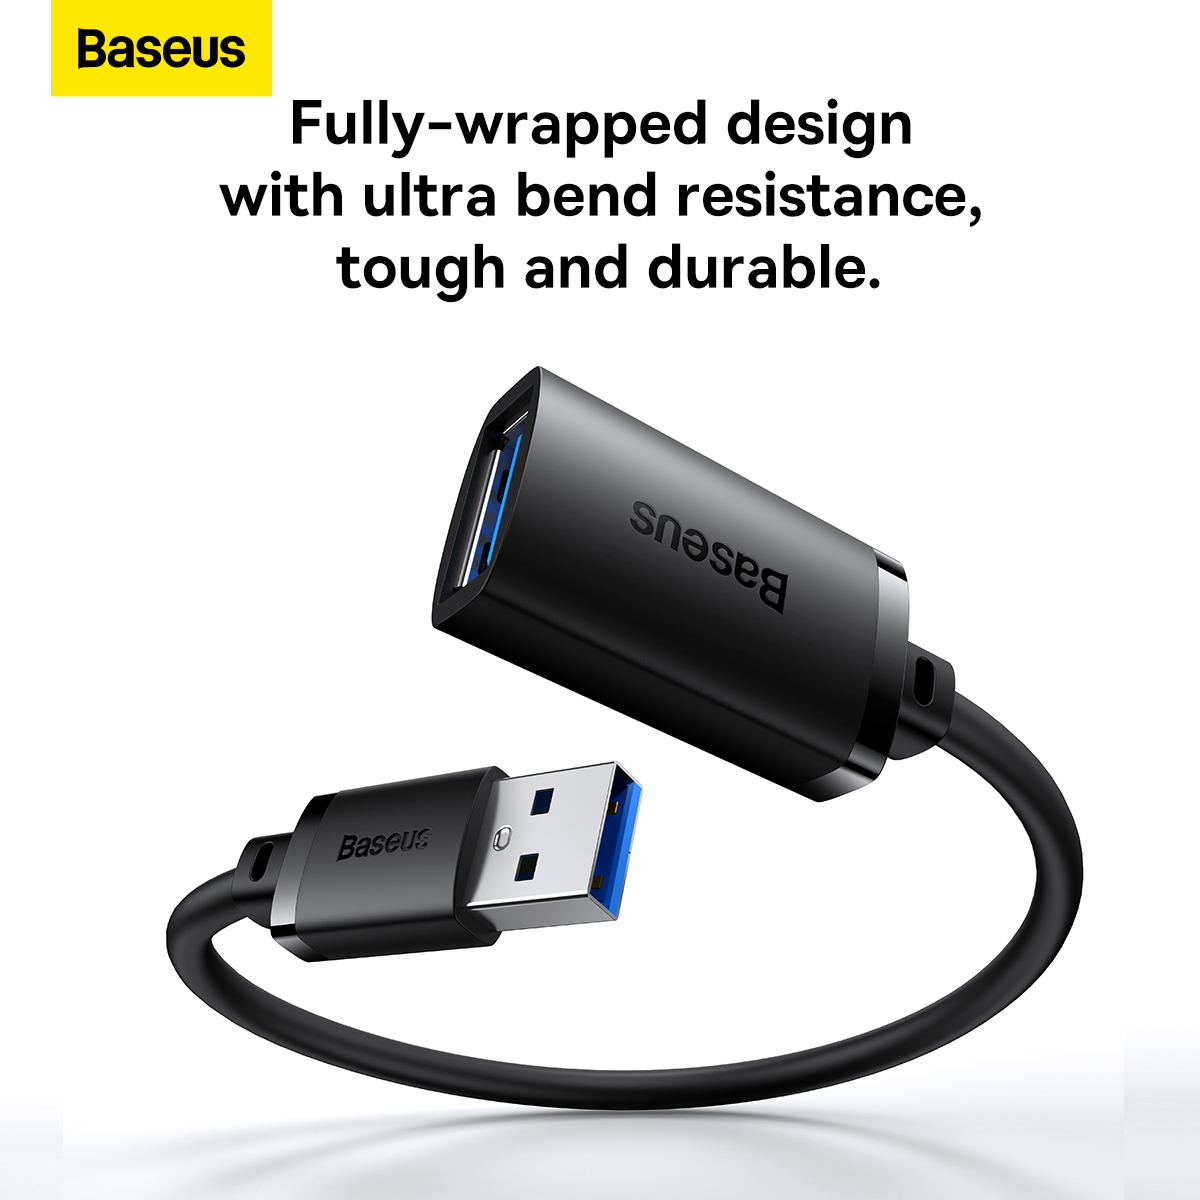 Cáp Nối Dài USB Tiện Lợi Baseus AirJoy Series USB3.0 Extension Cable (Hàng chính hãng)